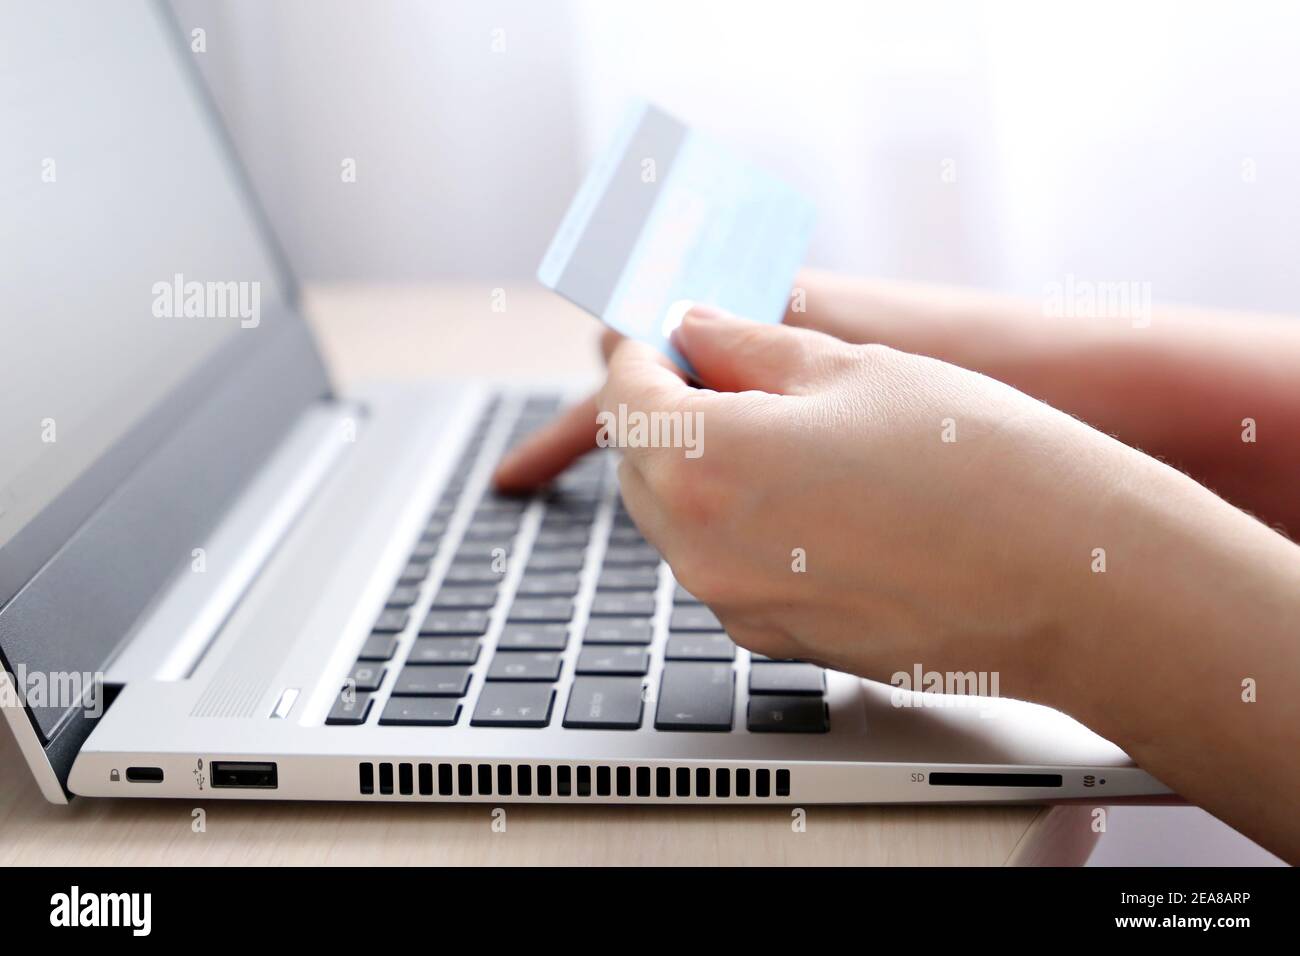 Femme tenant les types de carte de crédit sur le clavier d'ordinateur portable. Concept d'achat et de paiement en ligne, transactions financières Banque D'Images